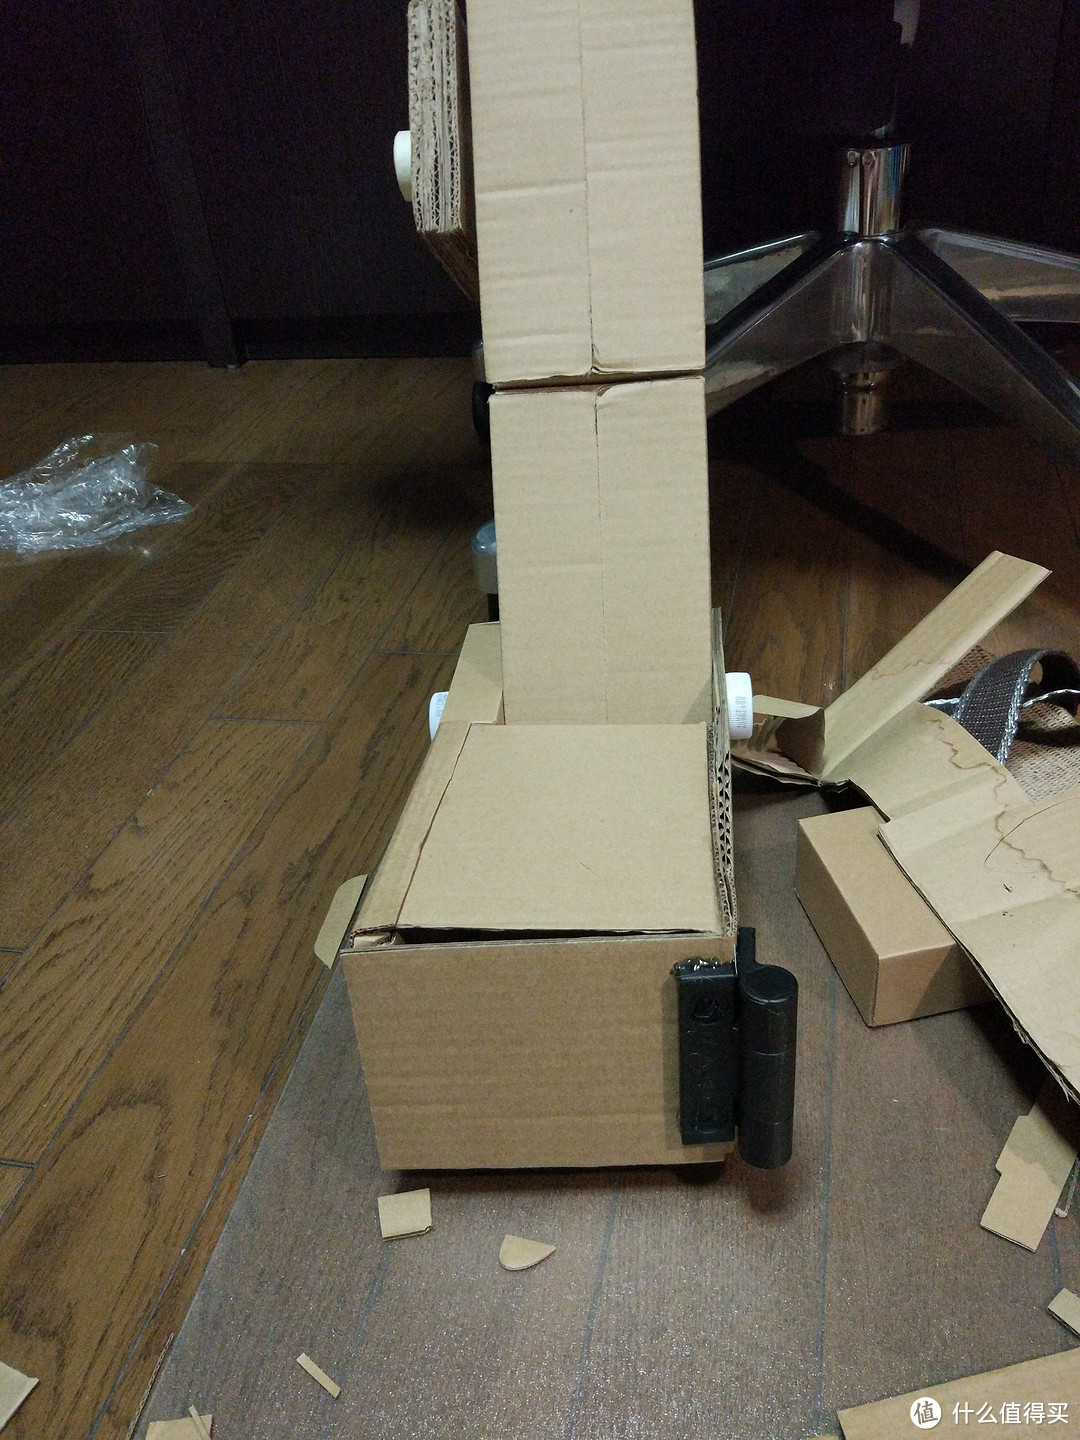 汽车人变形出发！ — 奶爸吴工 纸盒打造能变形的擎天柱！